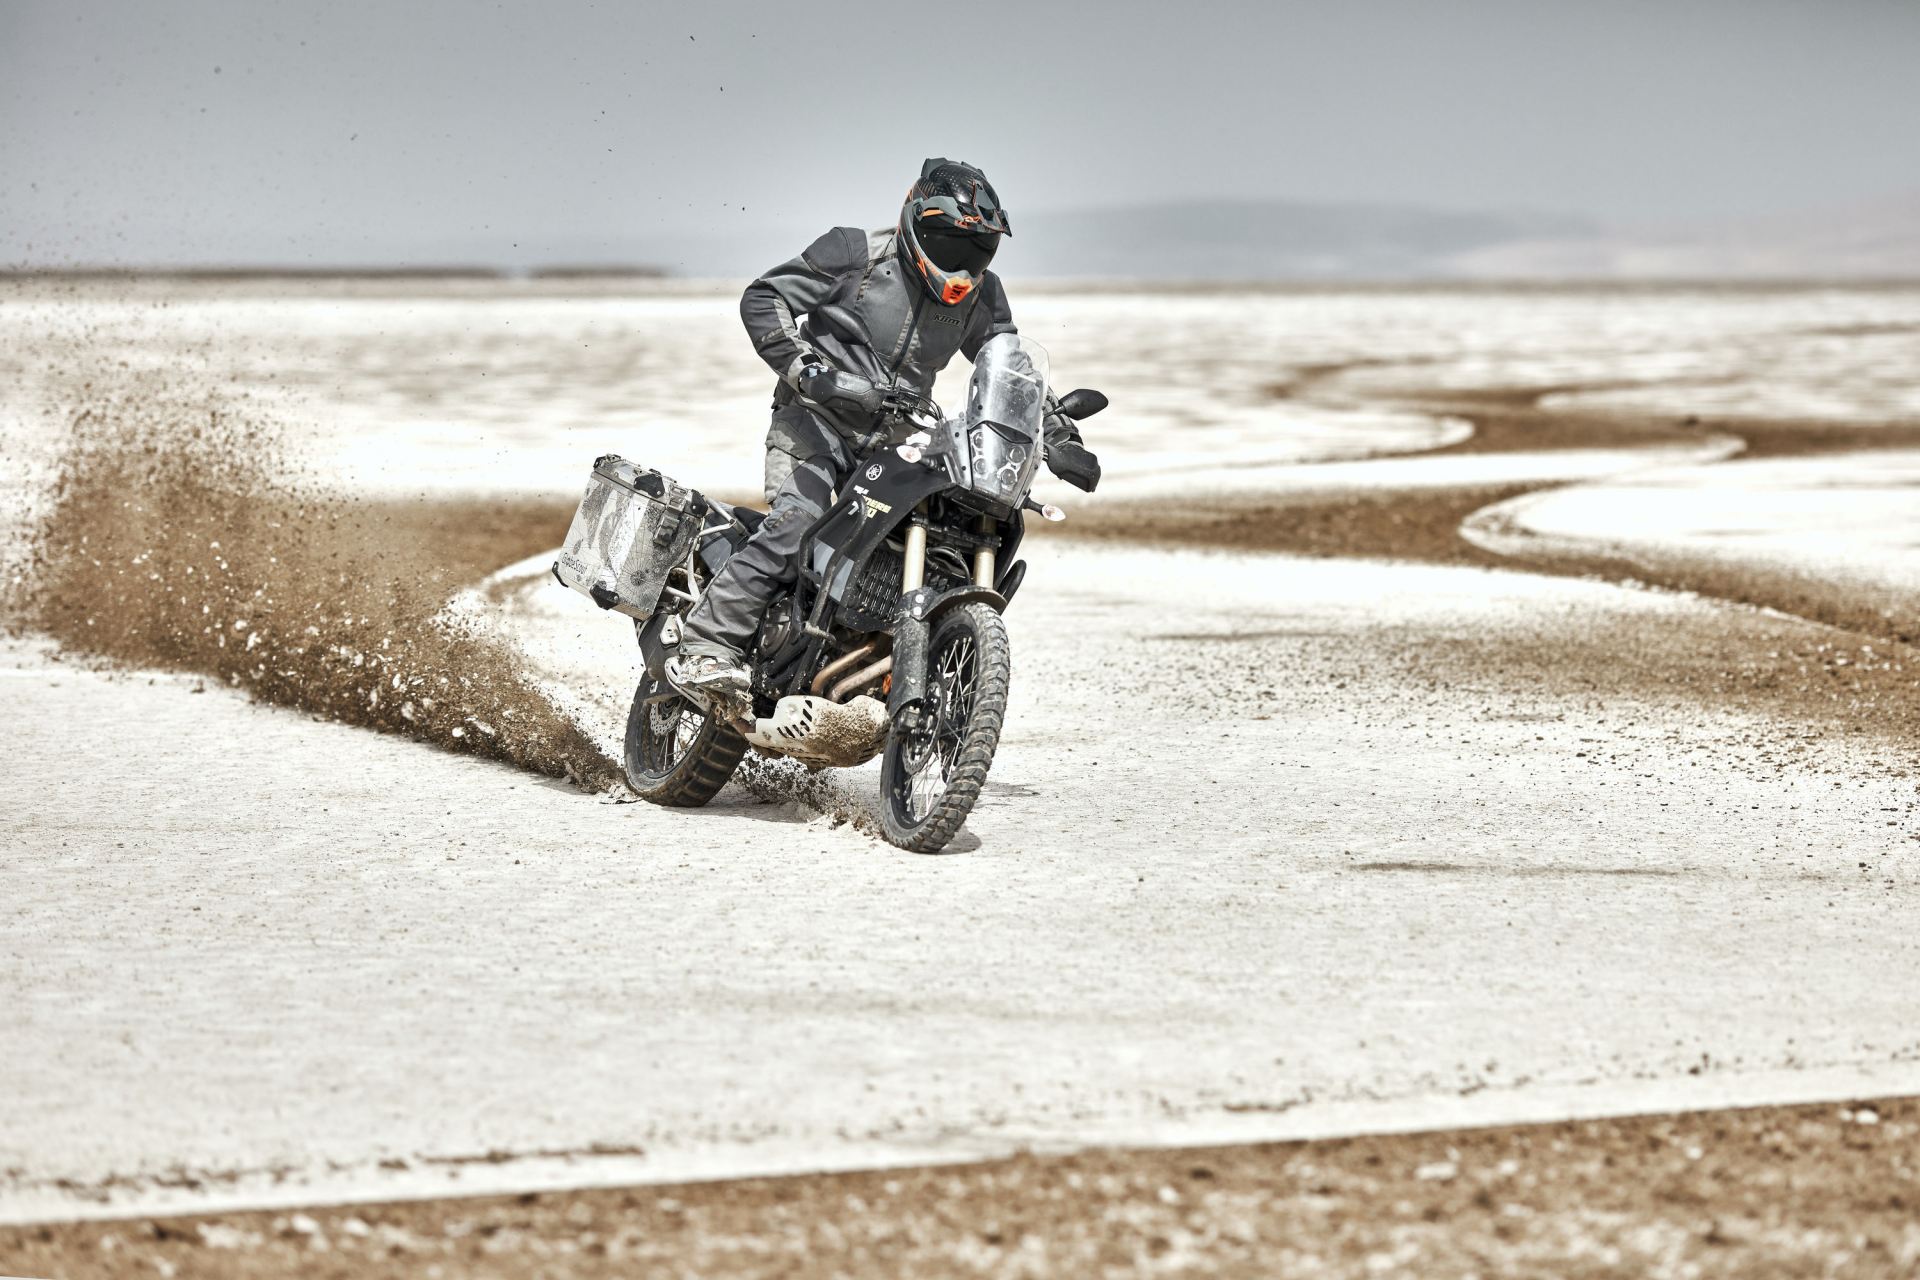 KLIM Motorradbekleidung - Wüsten Abenteuer !